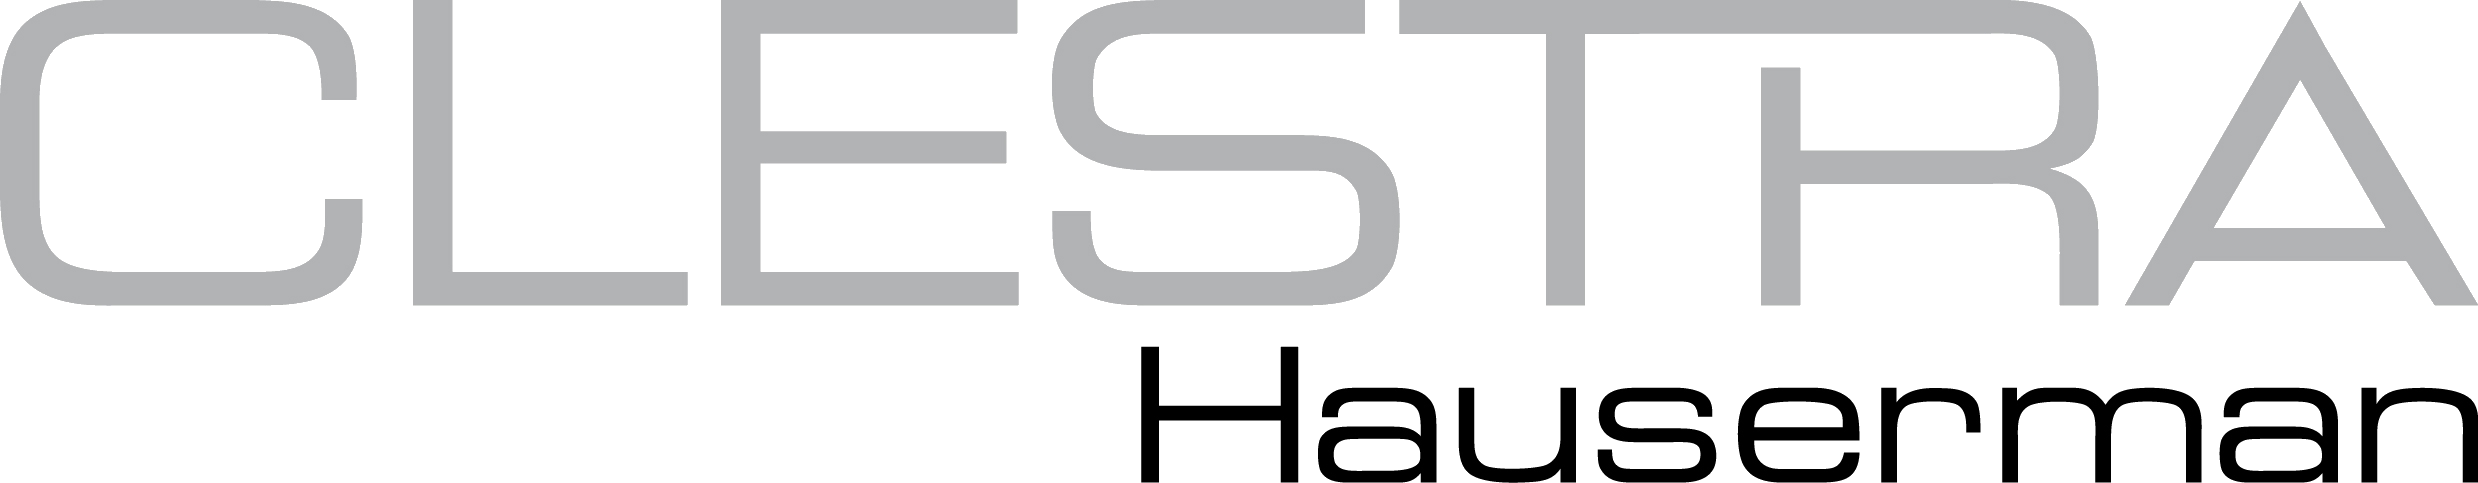 logo-clestra-hauserman_quadri_2015